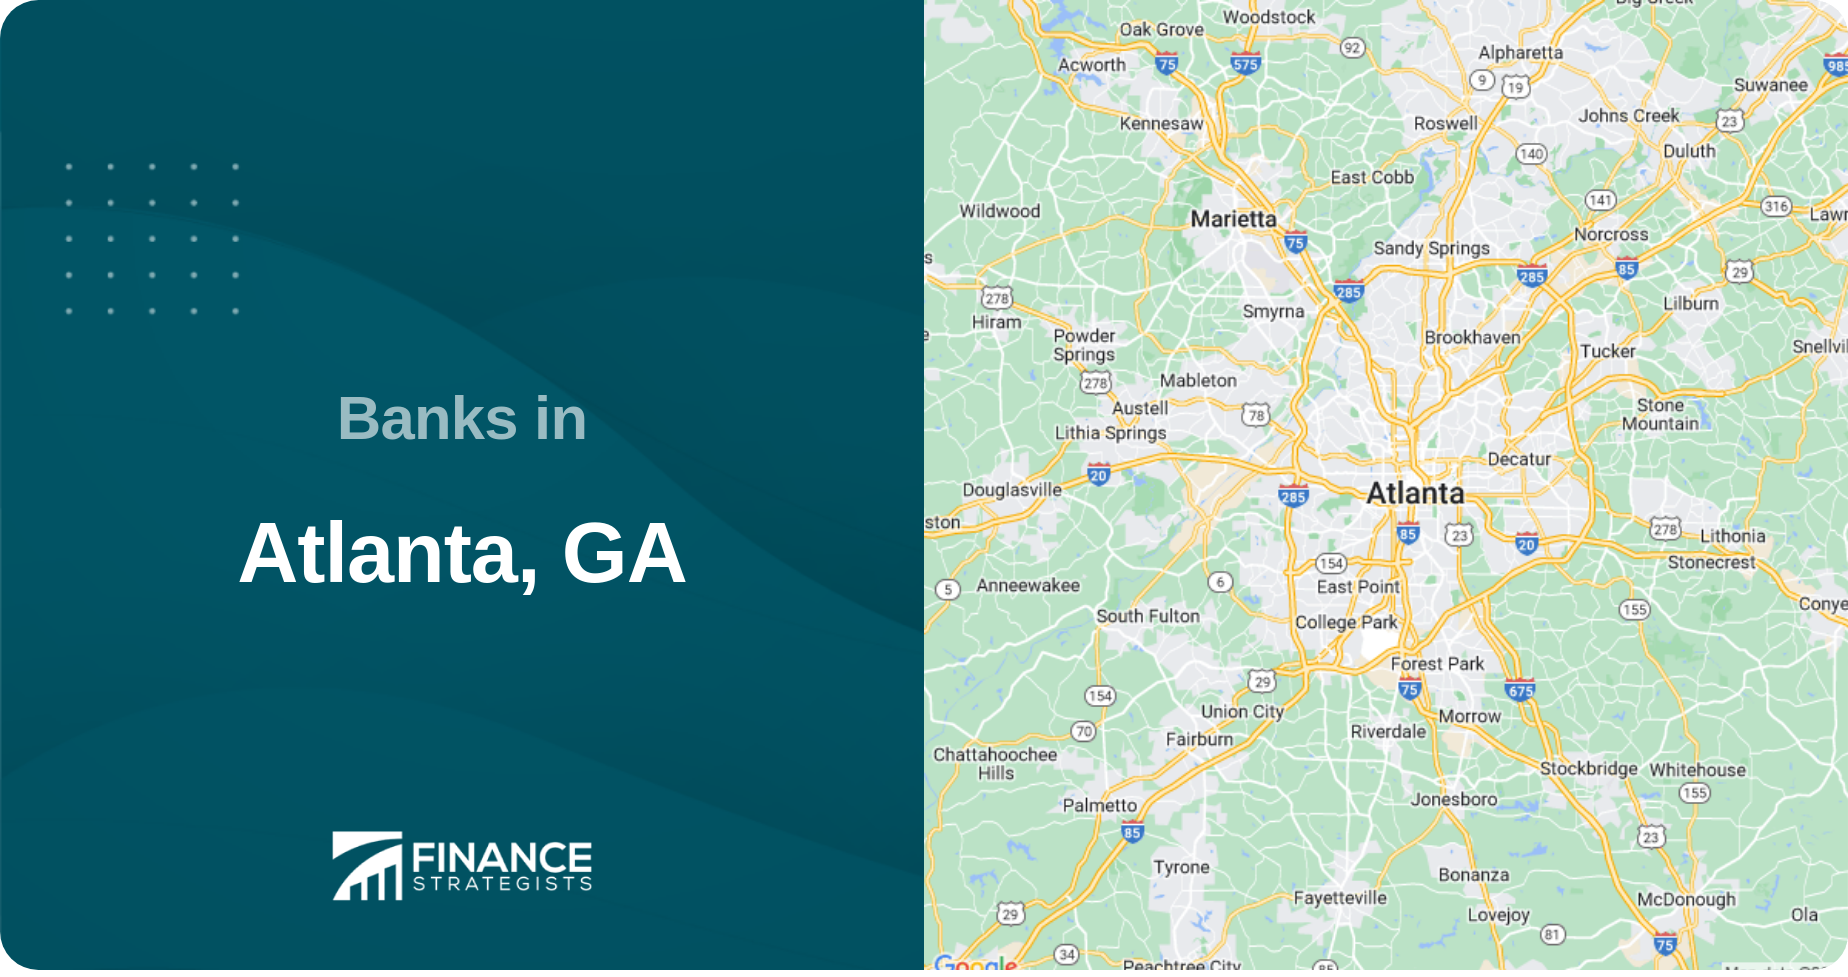 Banks in Atlanta, GA